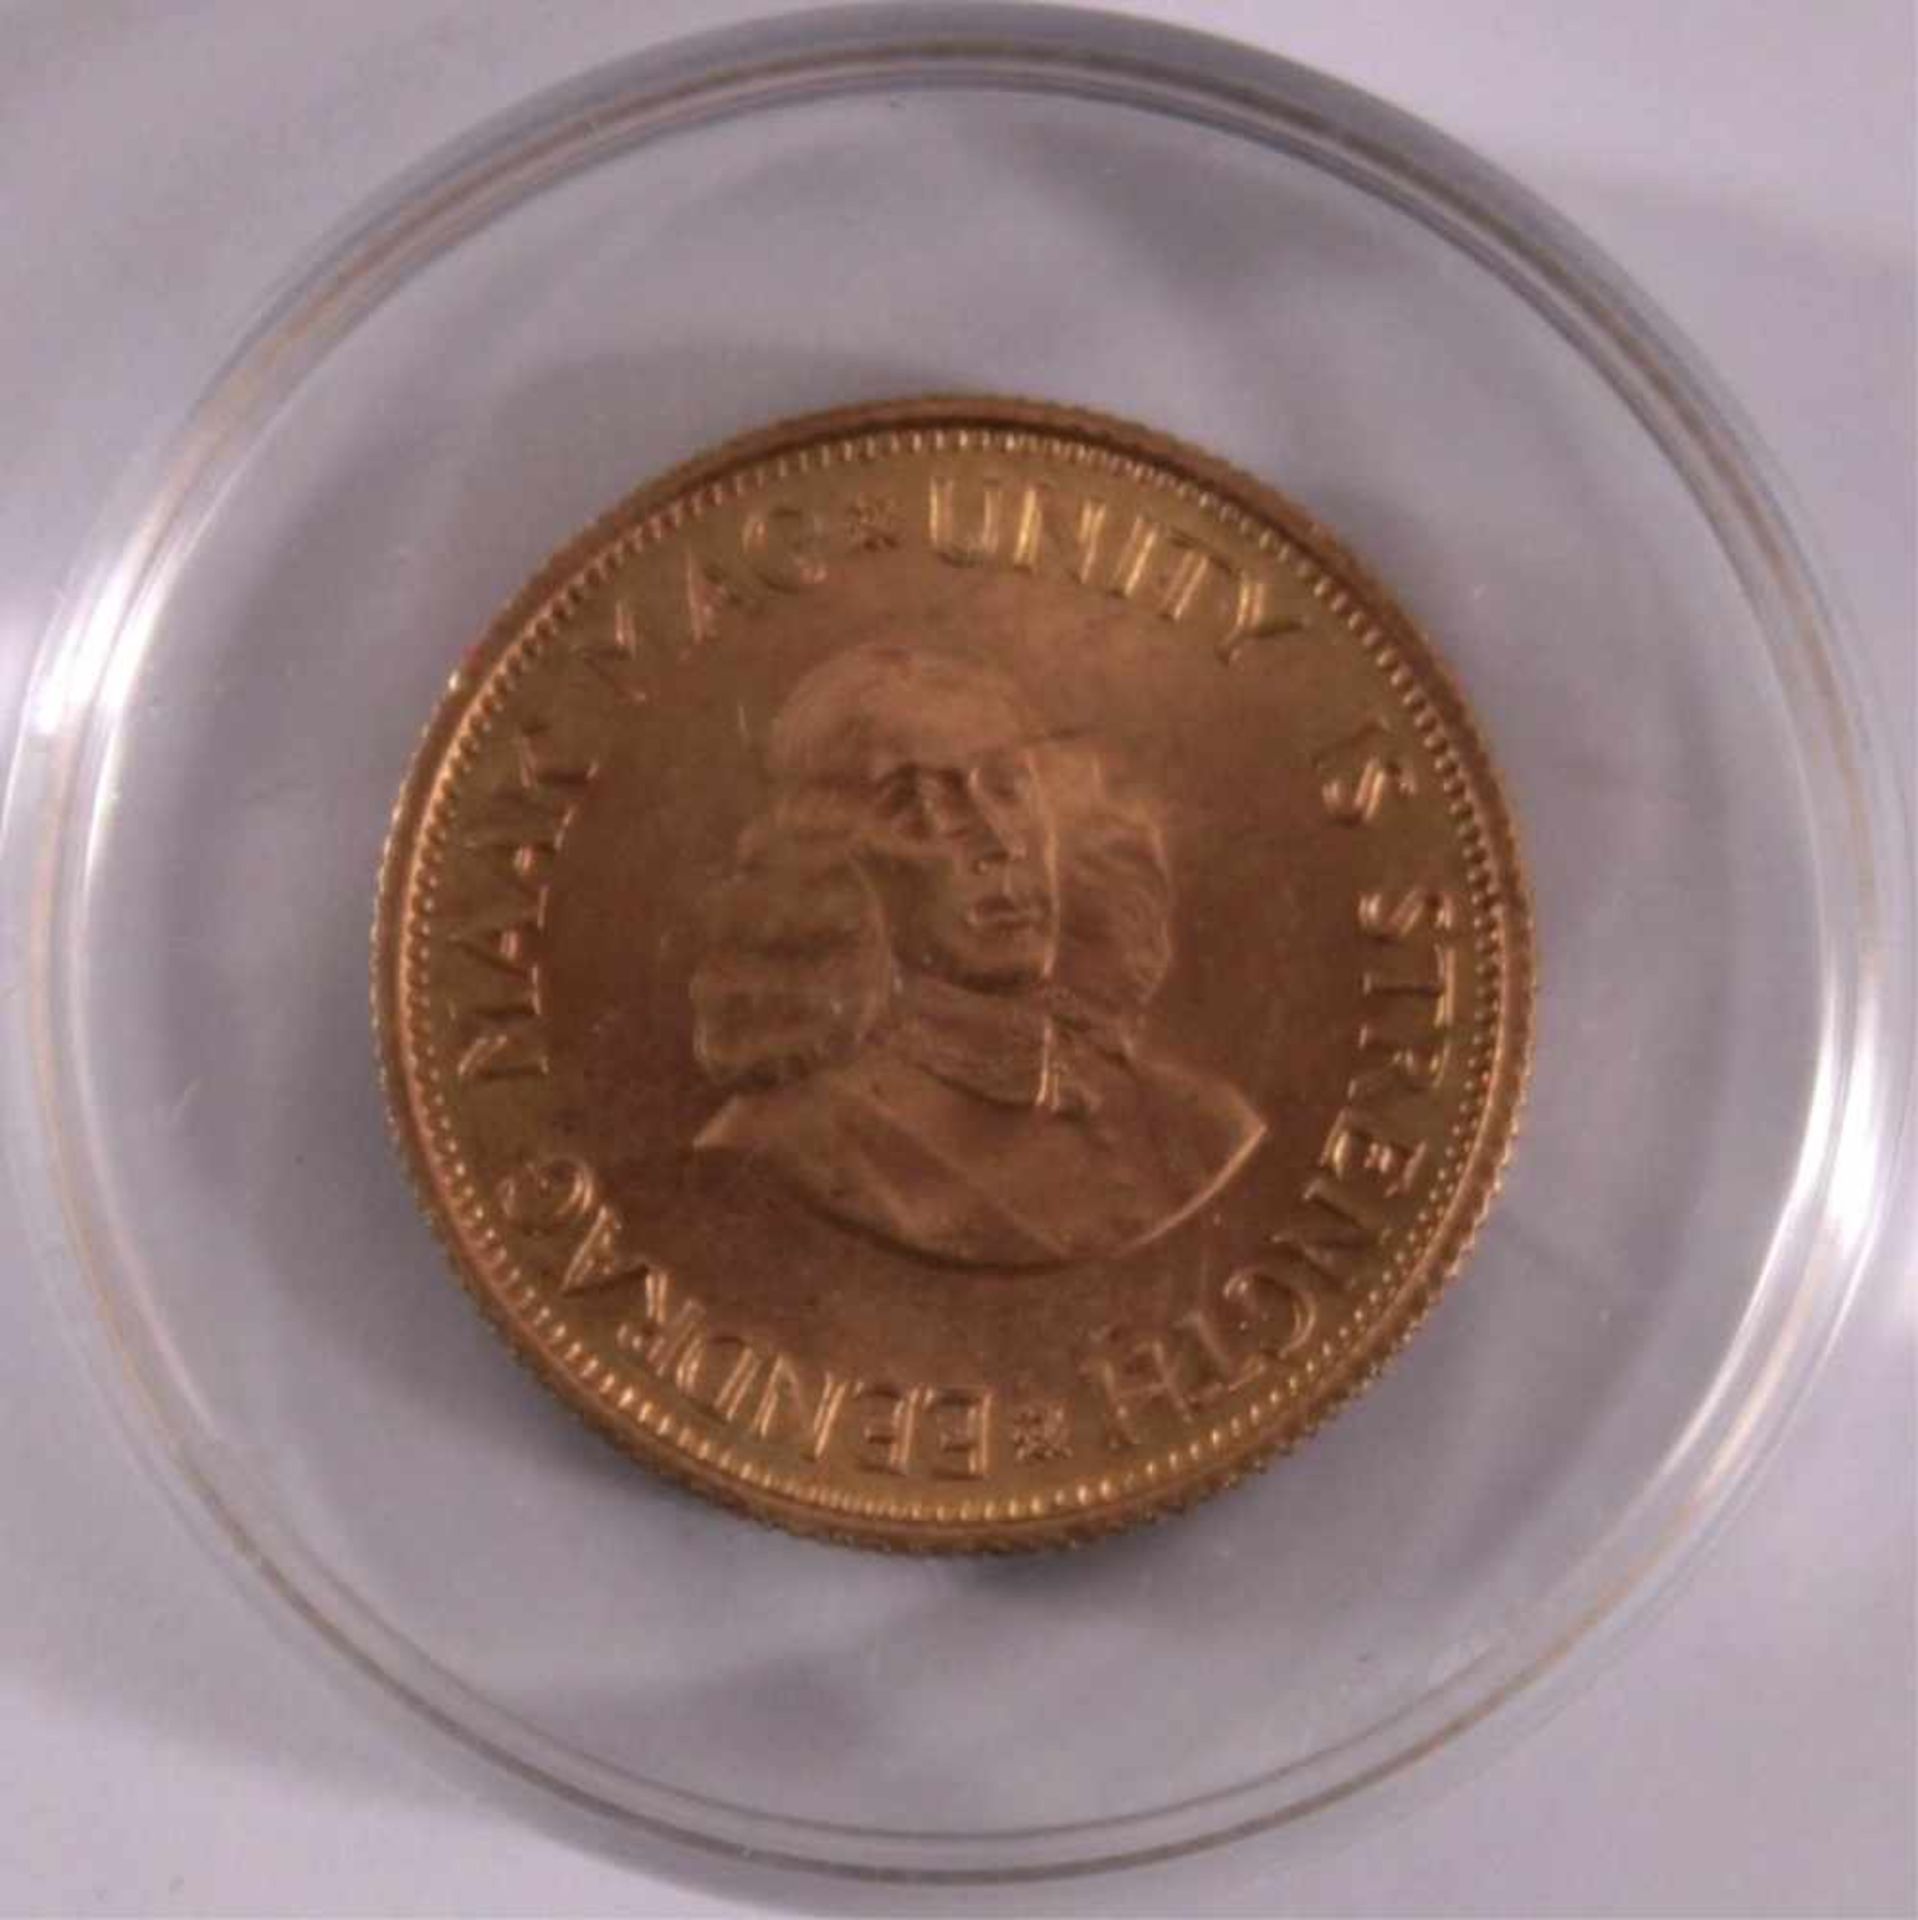 2 Rand Goldmünze 1964Gewicht ca. 7,9, 916/1000 Gelbgold